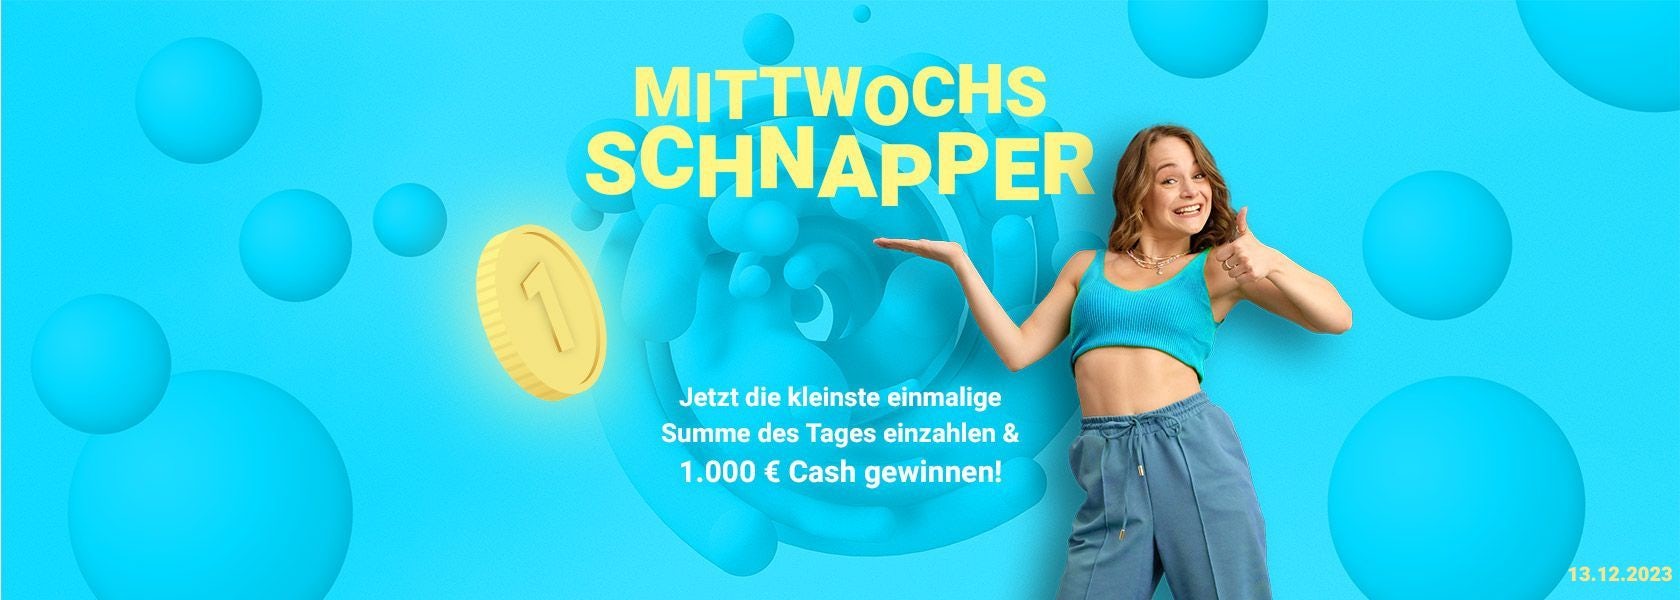 mittwochs-schnapper-bbo-131223